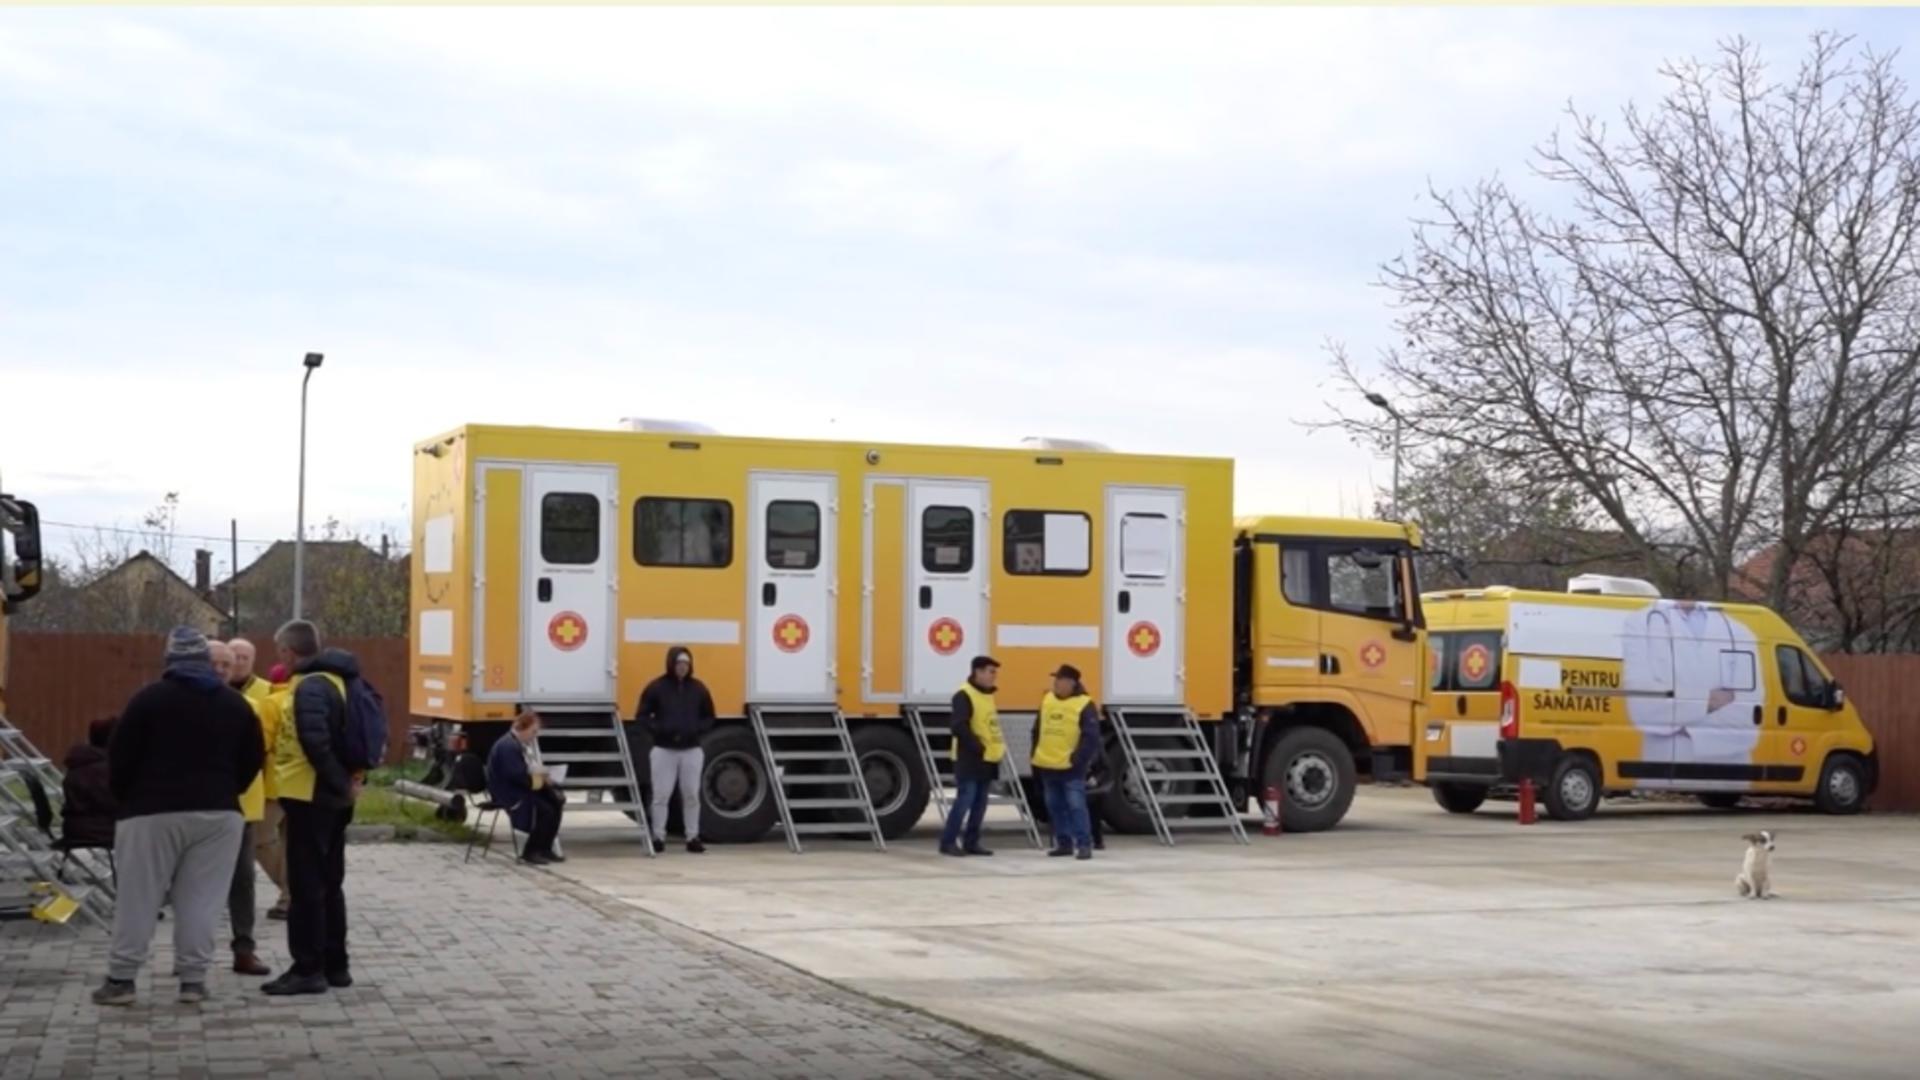 Caravana medicală își continuă traseul în țară - Zeci de medici voluntari se află până la sfârșitul acestei săptămâni în județul Hunedoara